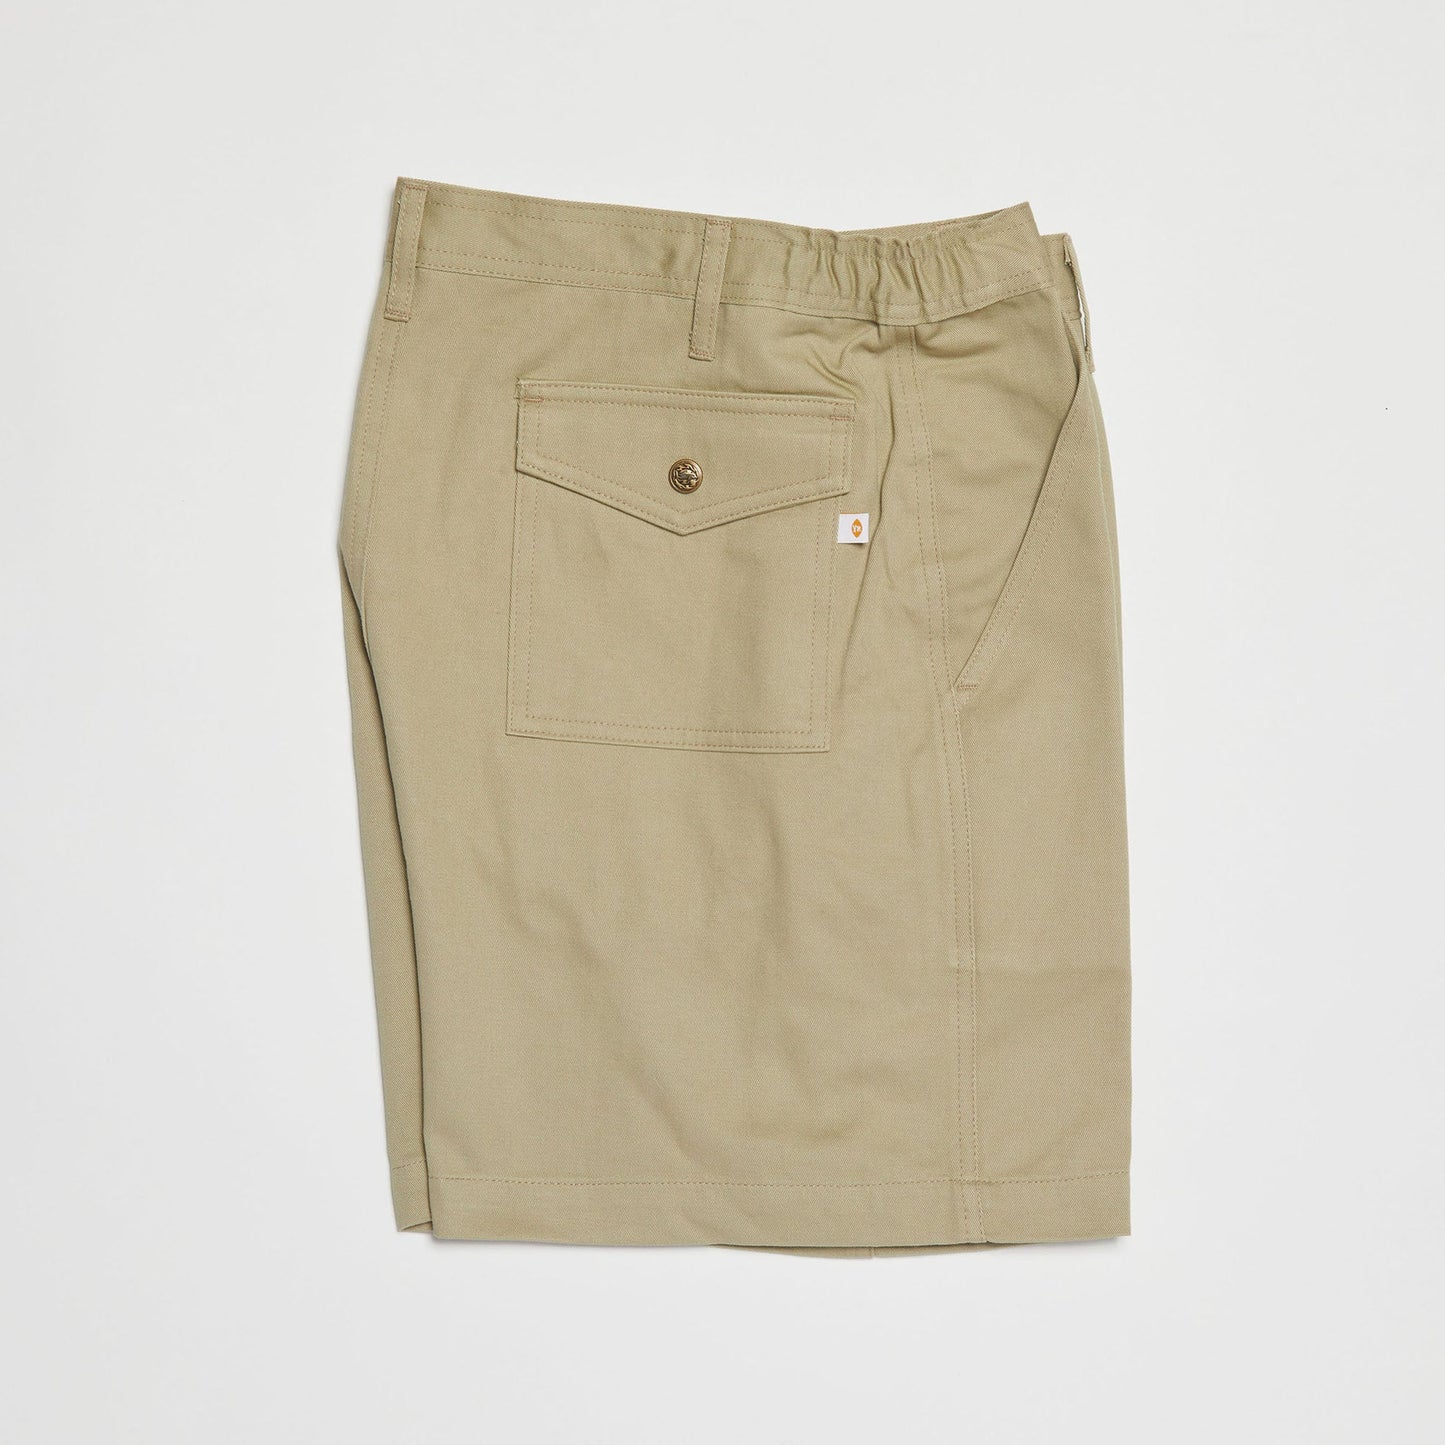 Boy Scout Shorts (Khaki)